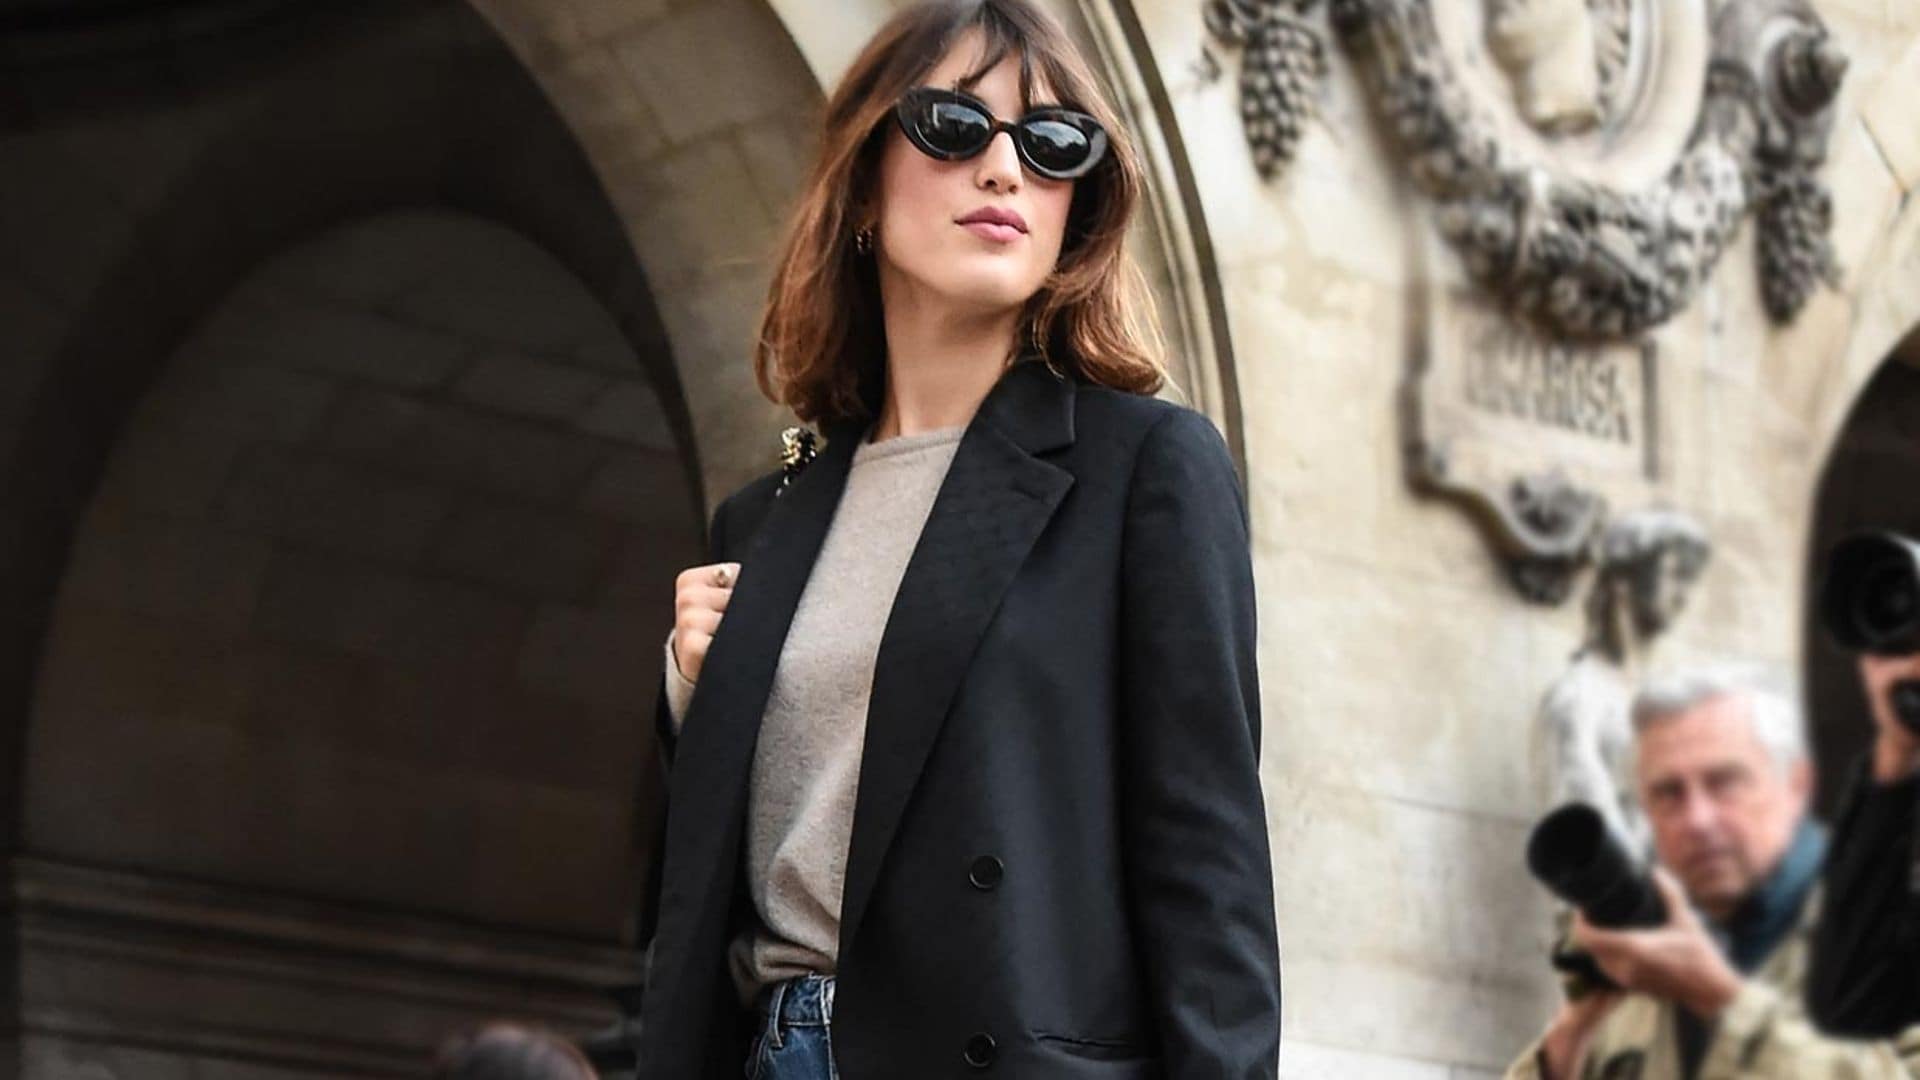 Los trucos de las francesas para vestir bien con básicos que nunca pasan de moda